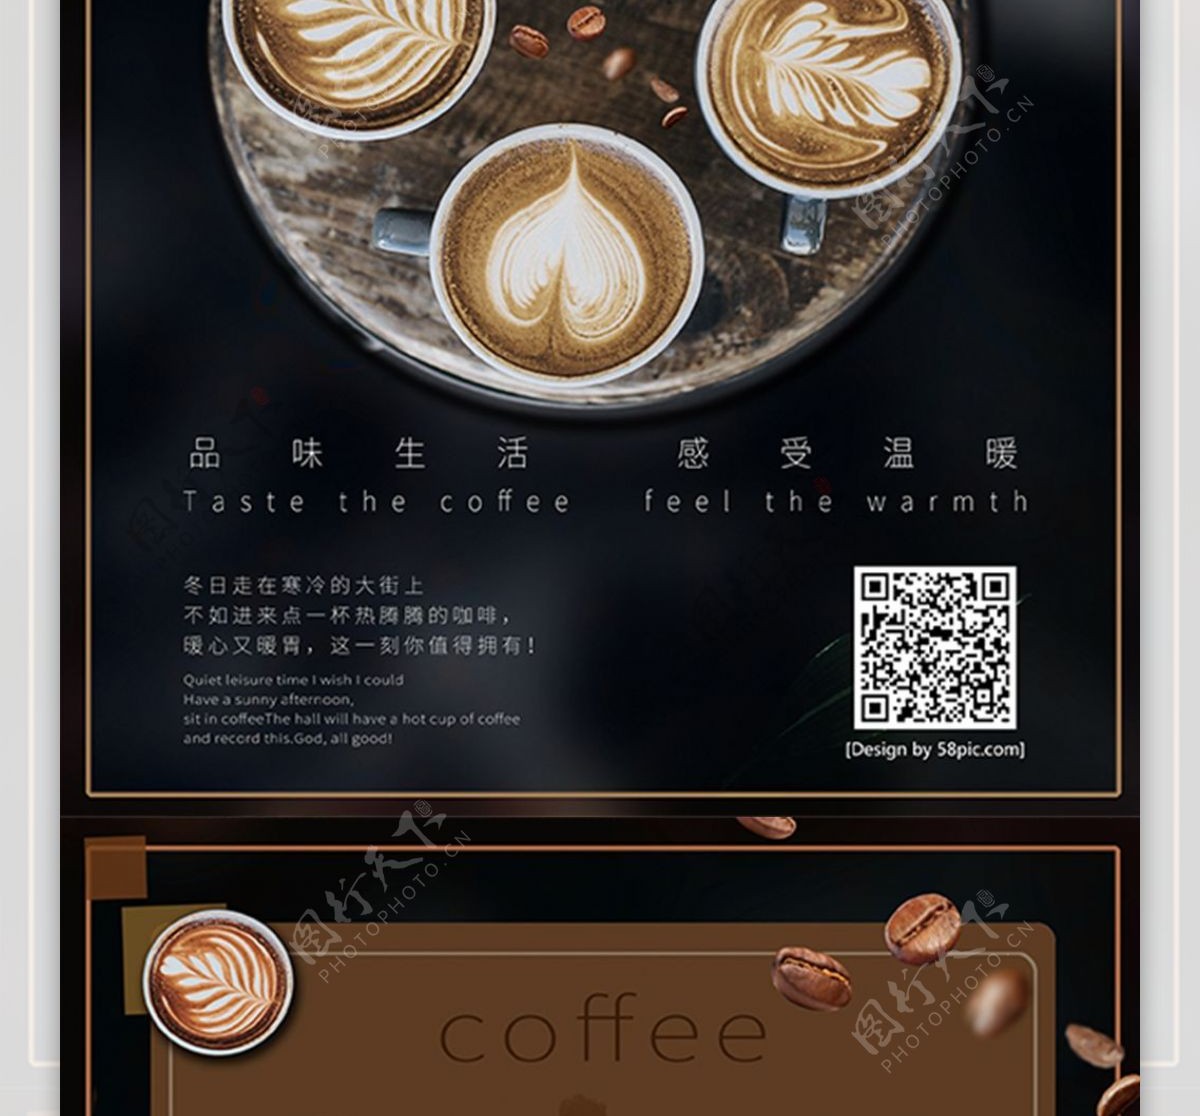 咖啡DM单热饮宣传单